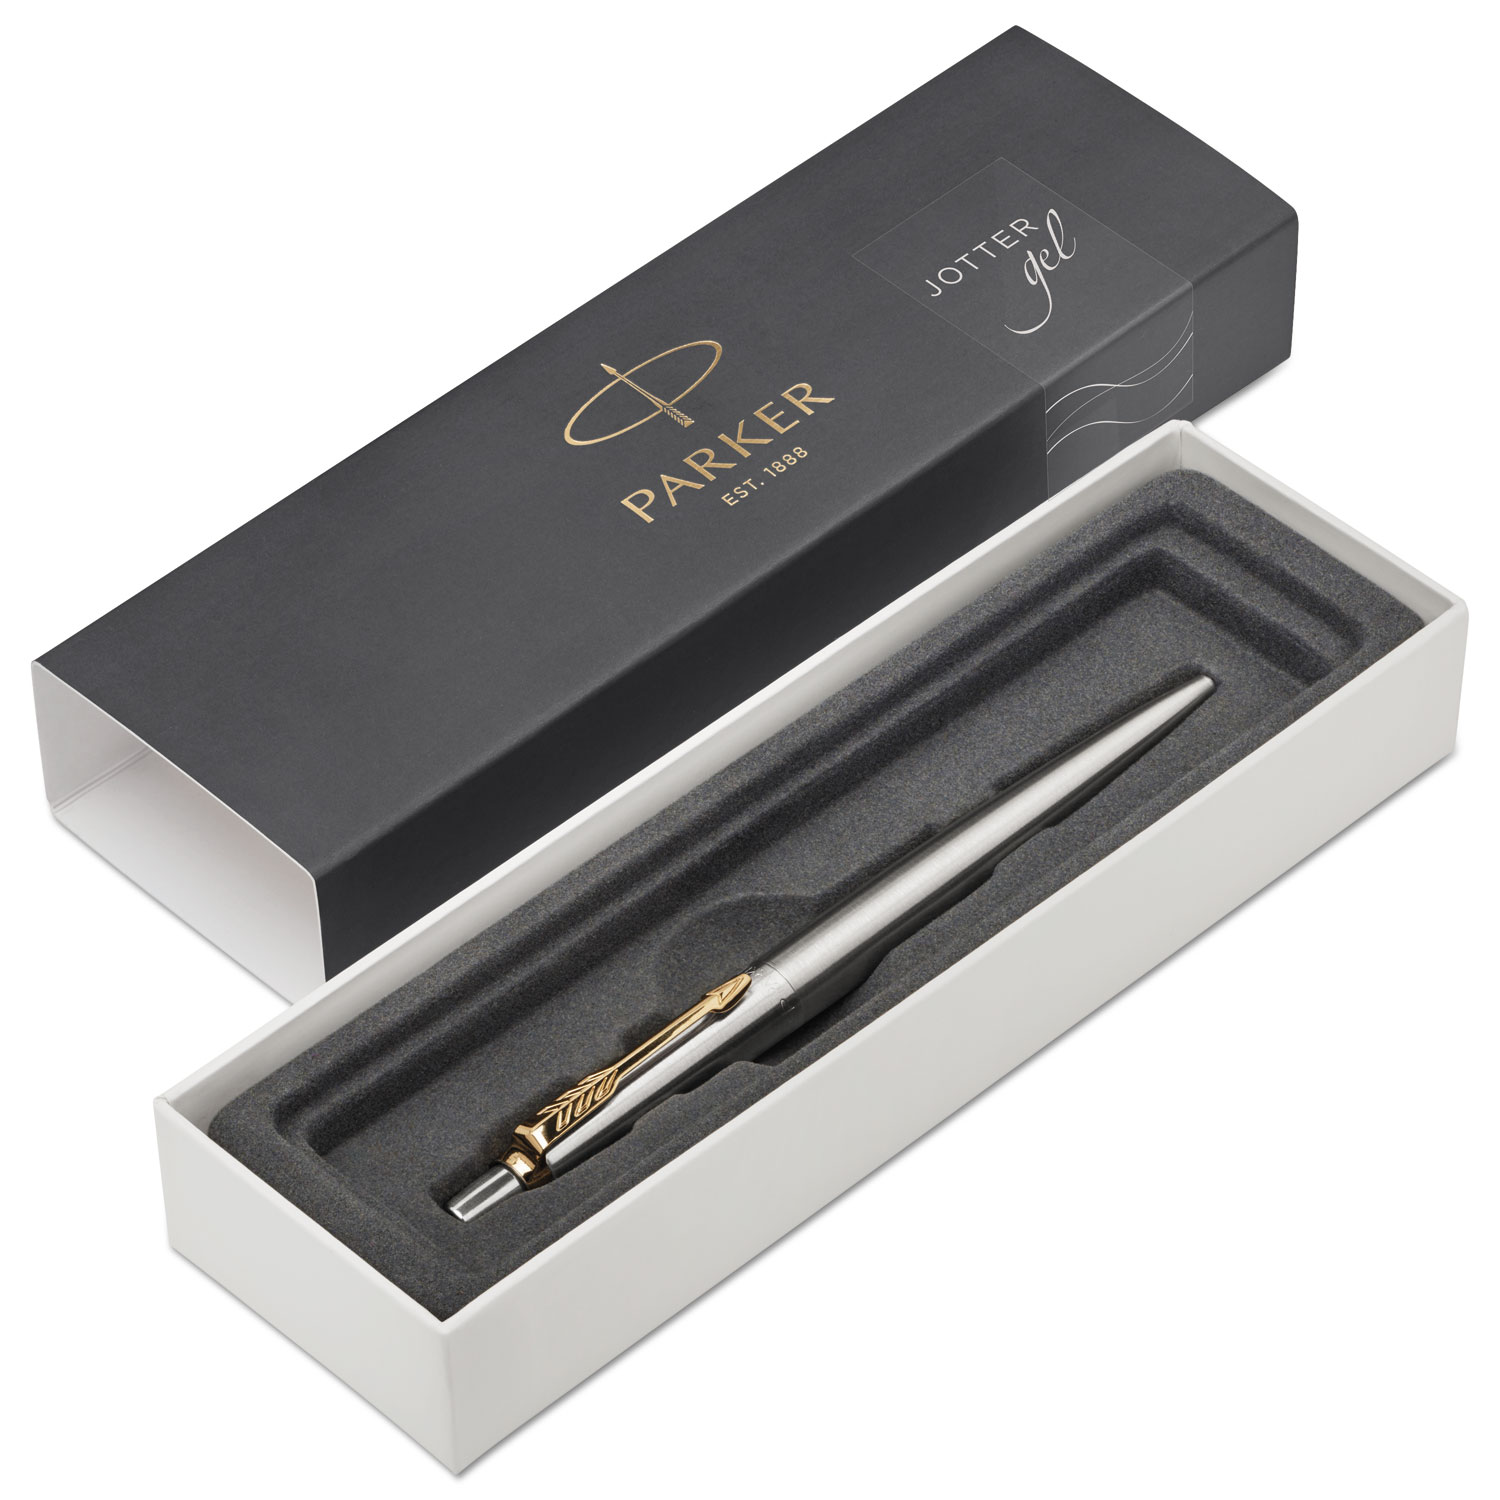  Parker 2020647 Jotter Retractable Gel Pen Gift Box, 0.7mm, Black Ink, Stainless Steel Barrel (PAR2020647) 